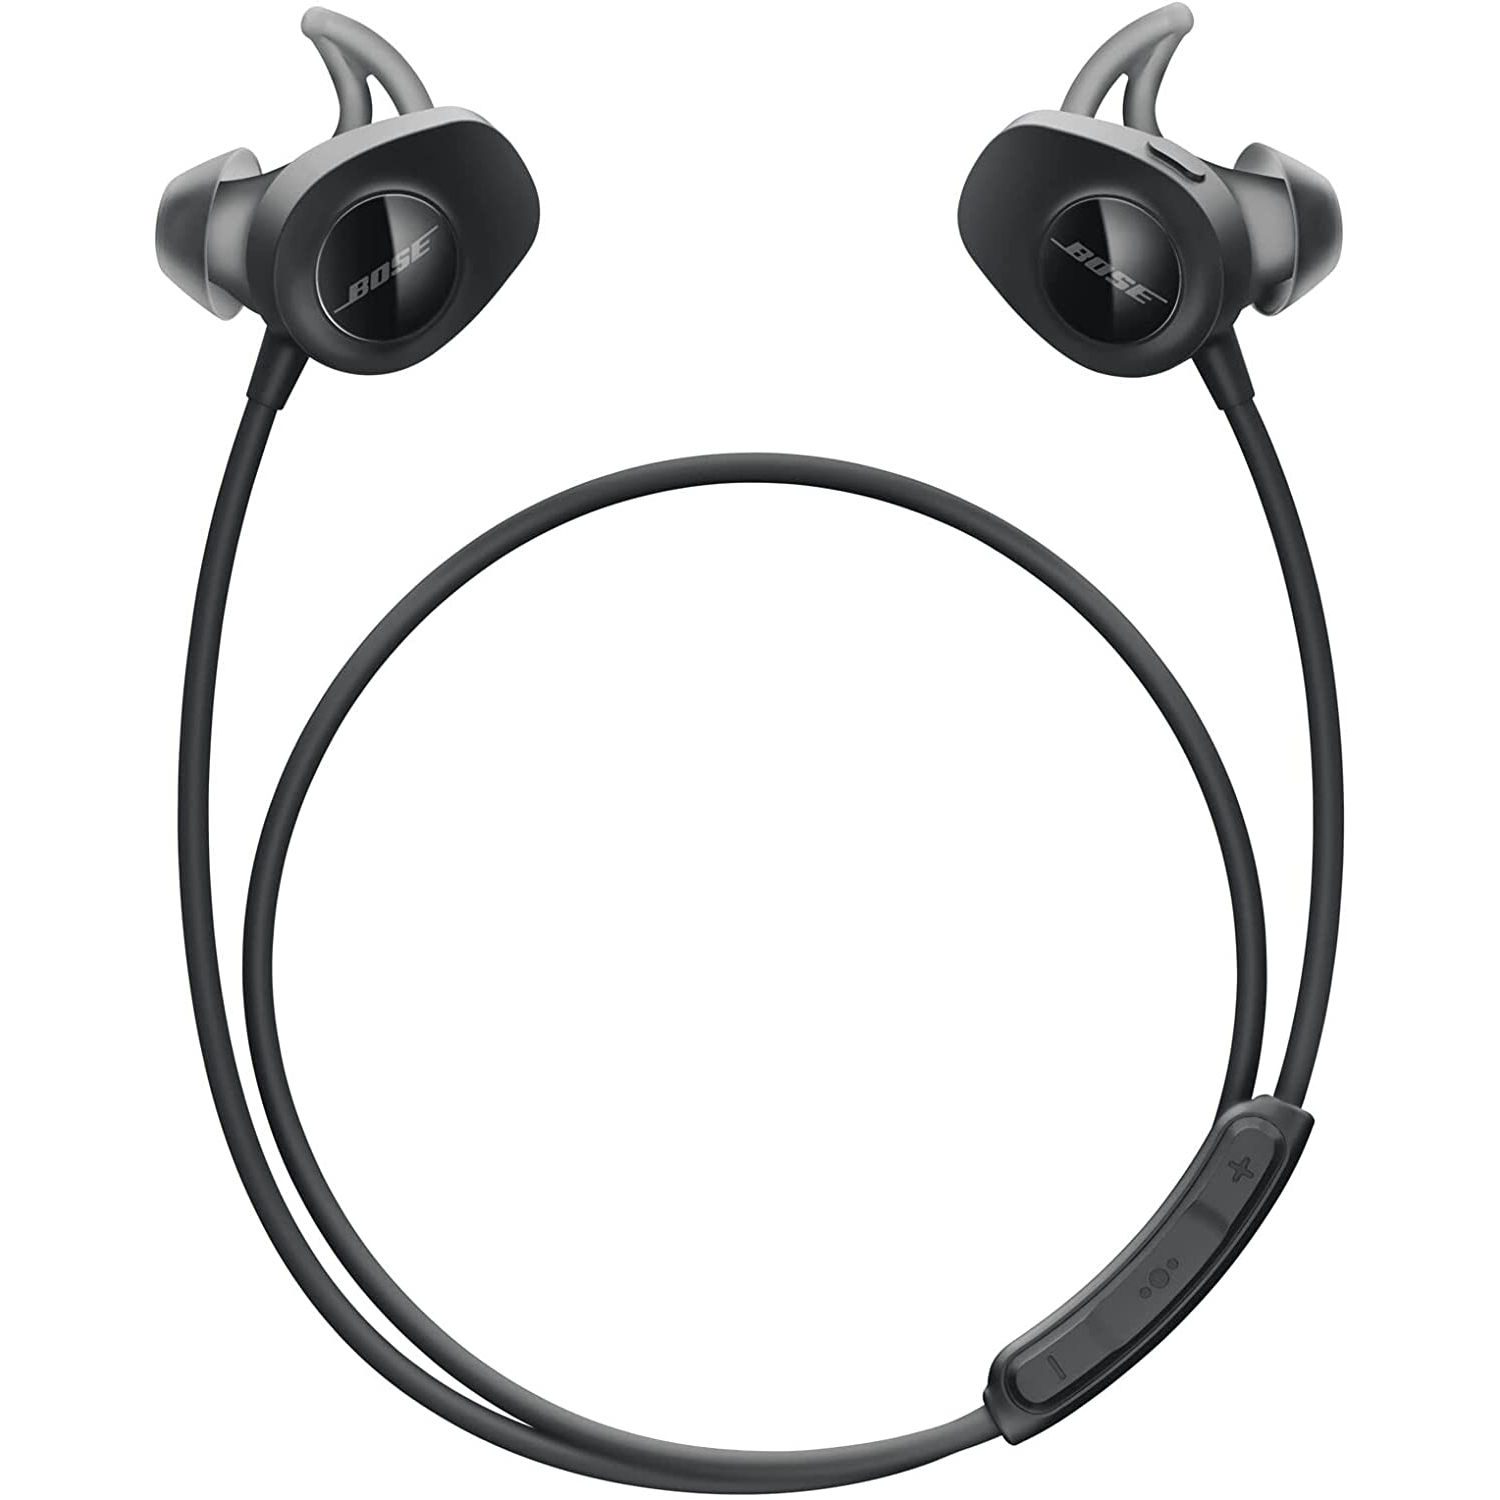 Bose SoundSport In-Ear Wireless Headphones - Black - Open Box